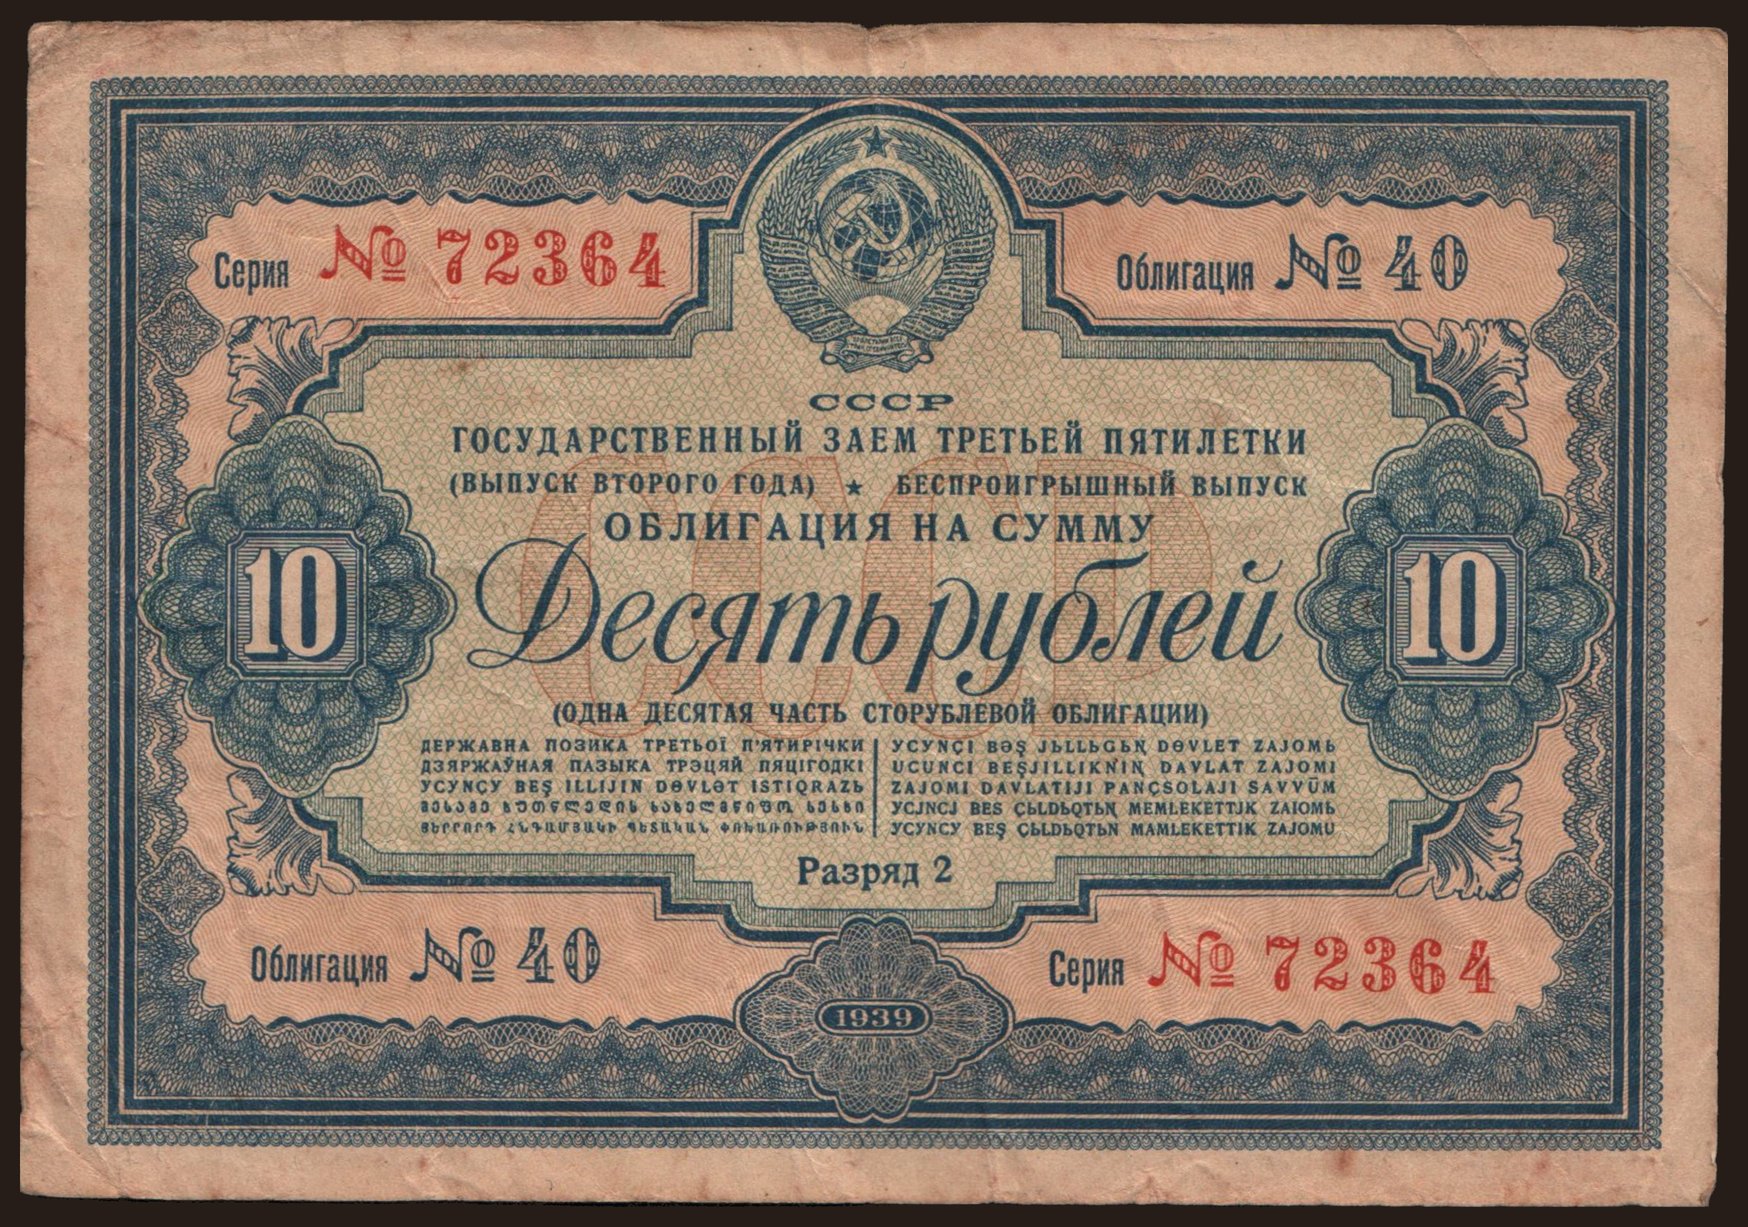 Gosudarstvennyj zaem, 10 rubel, 1939